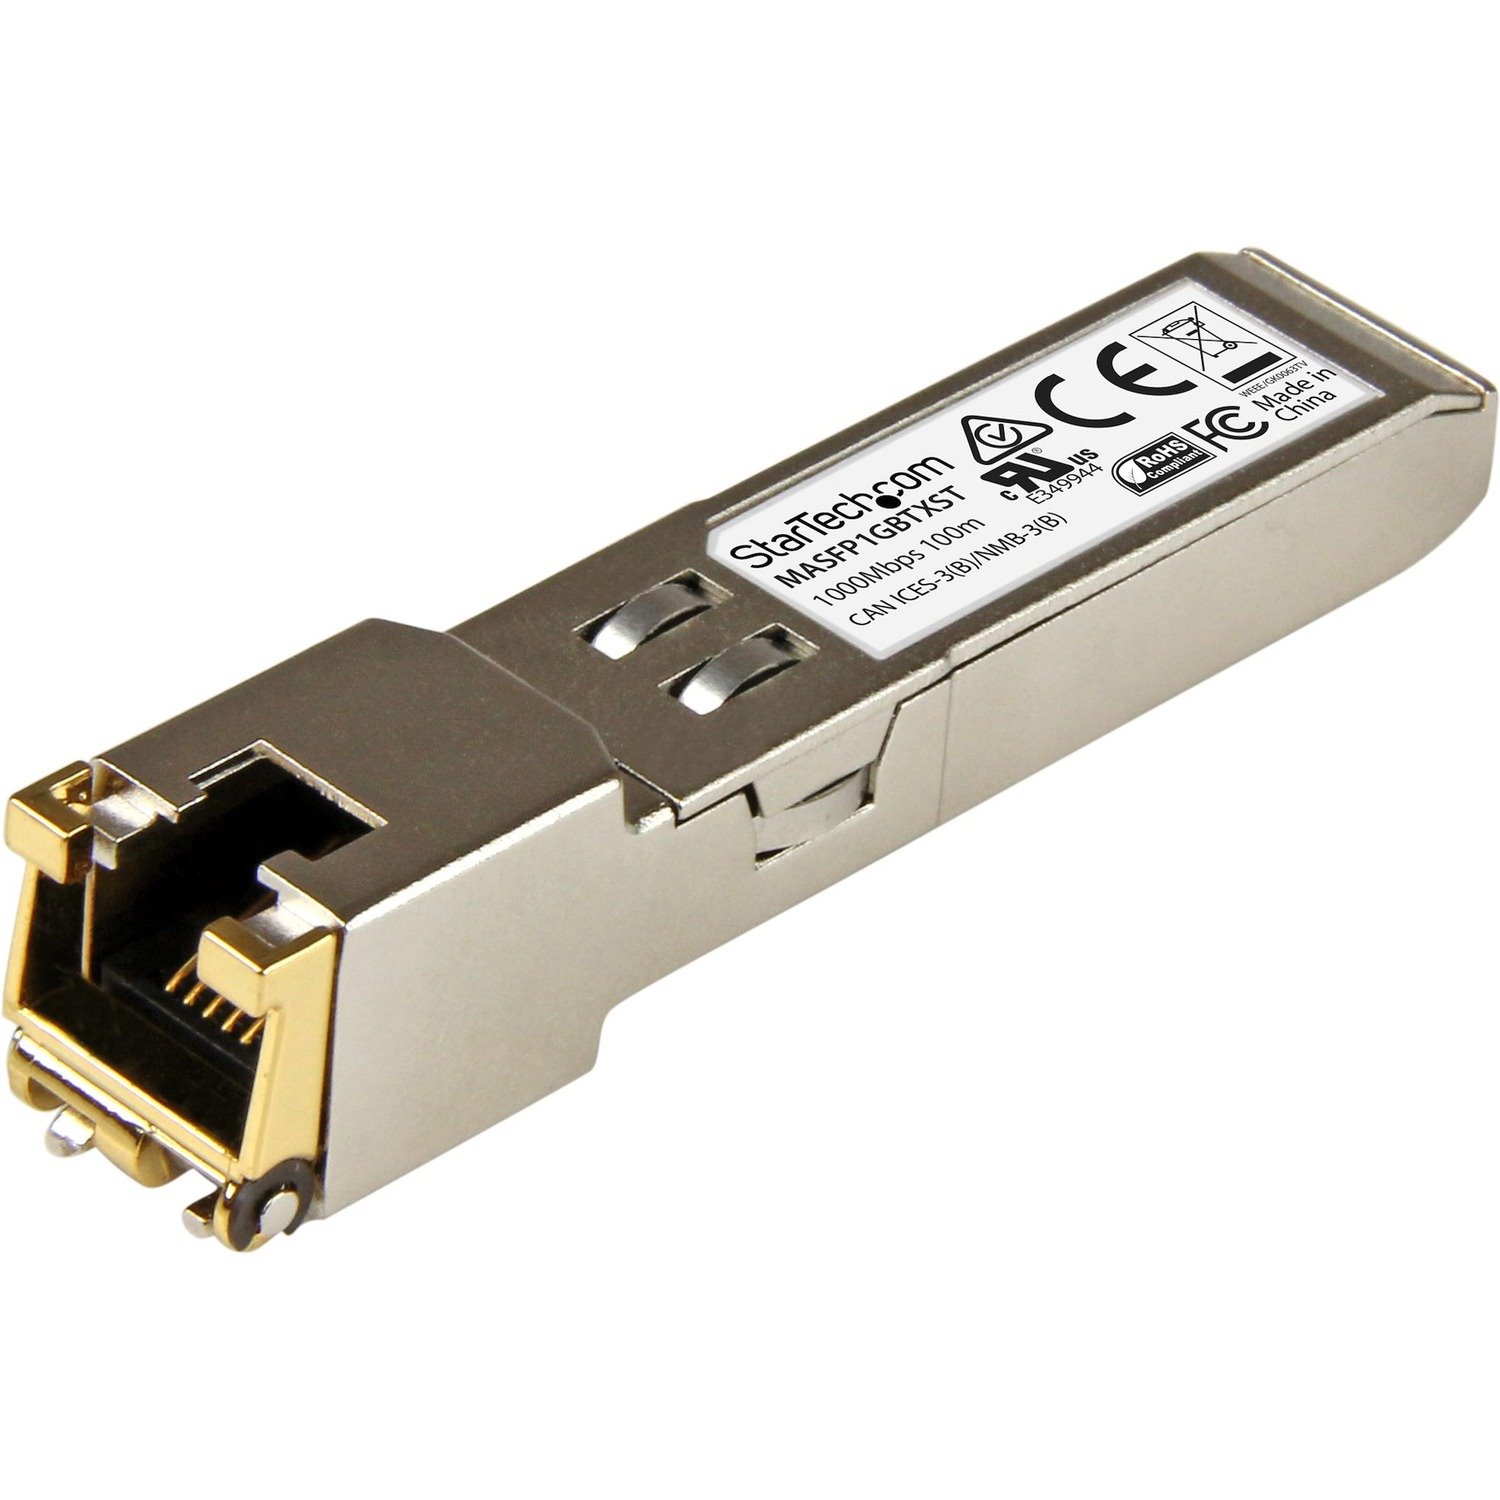 StarTech.com SFP (mini-GBIC) - 1 x RJ-45 10/100/1000Base-T Network LAN